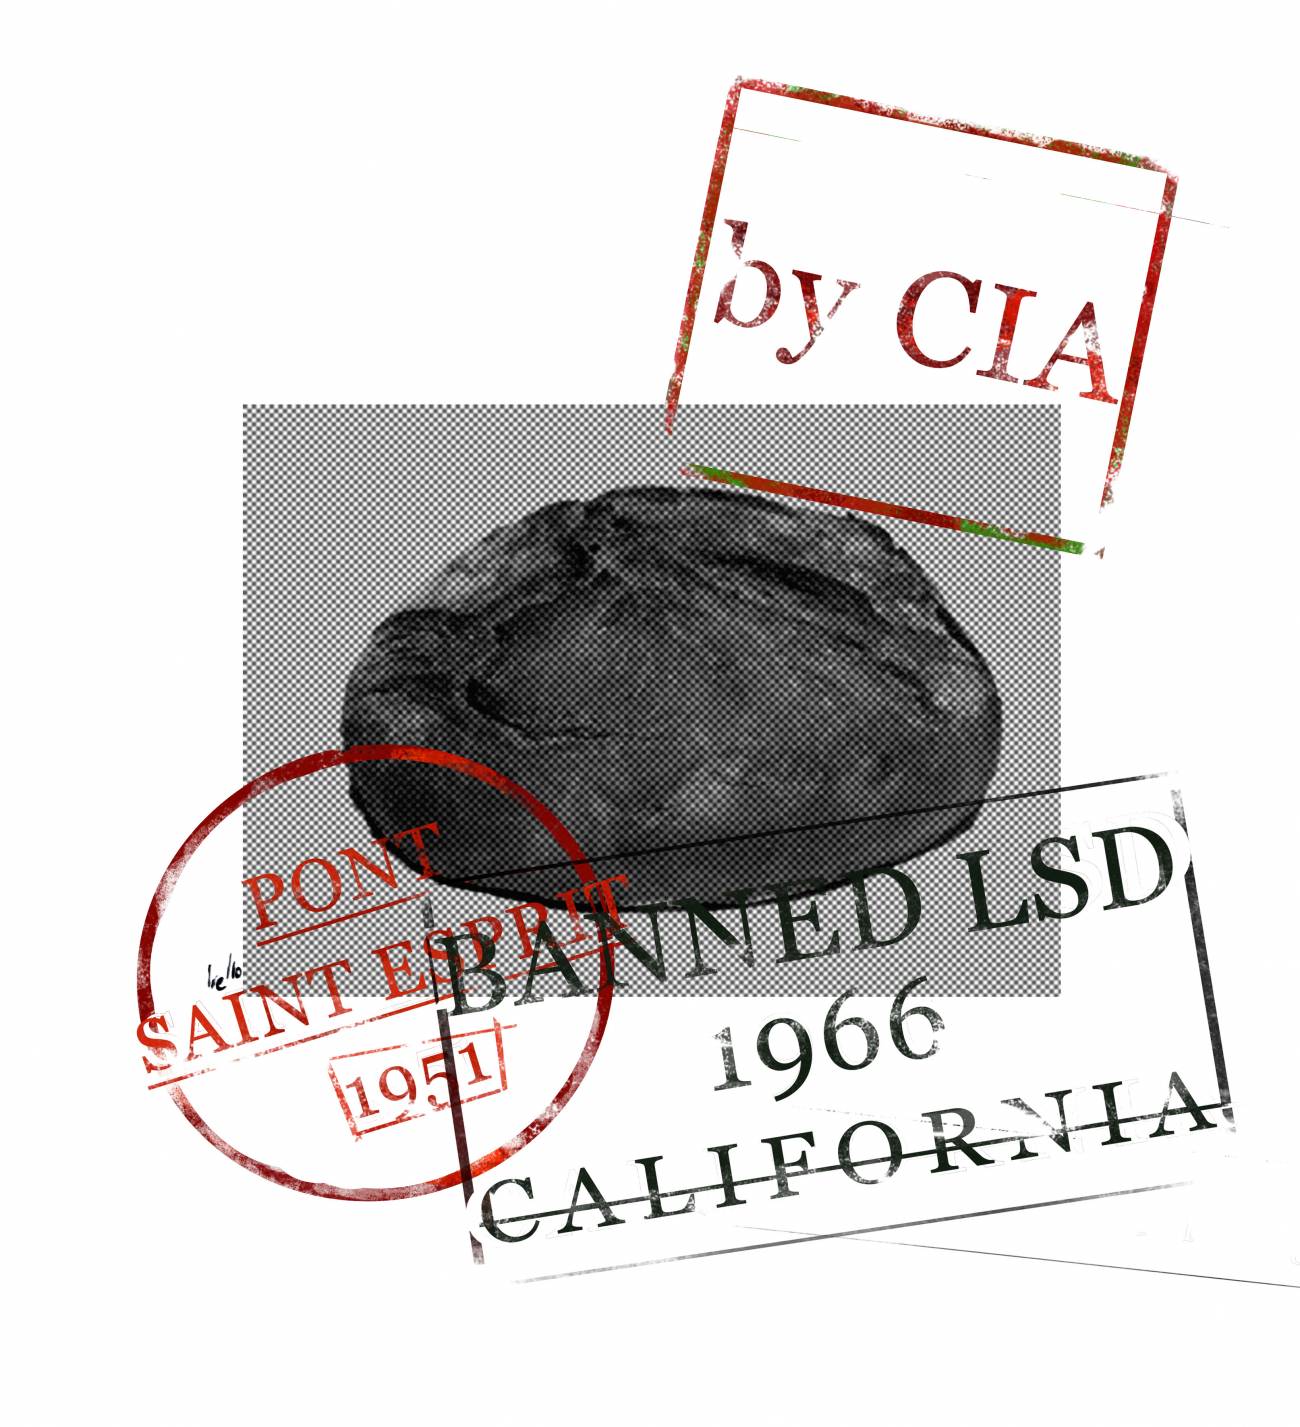 El 6 de Octubre de 1966 se prohibe el uso y la experimentación con LSD en el estado de California